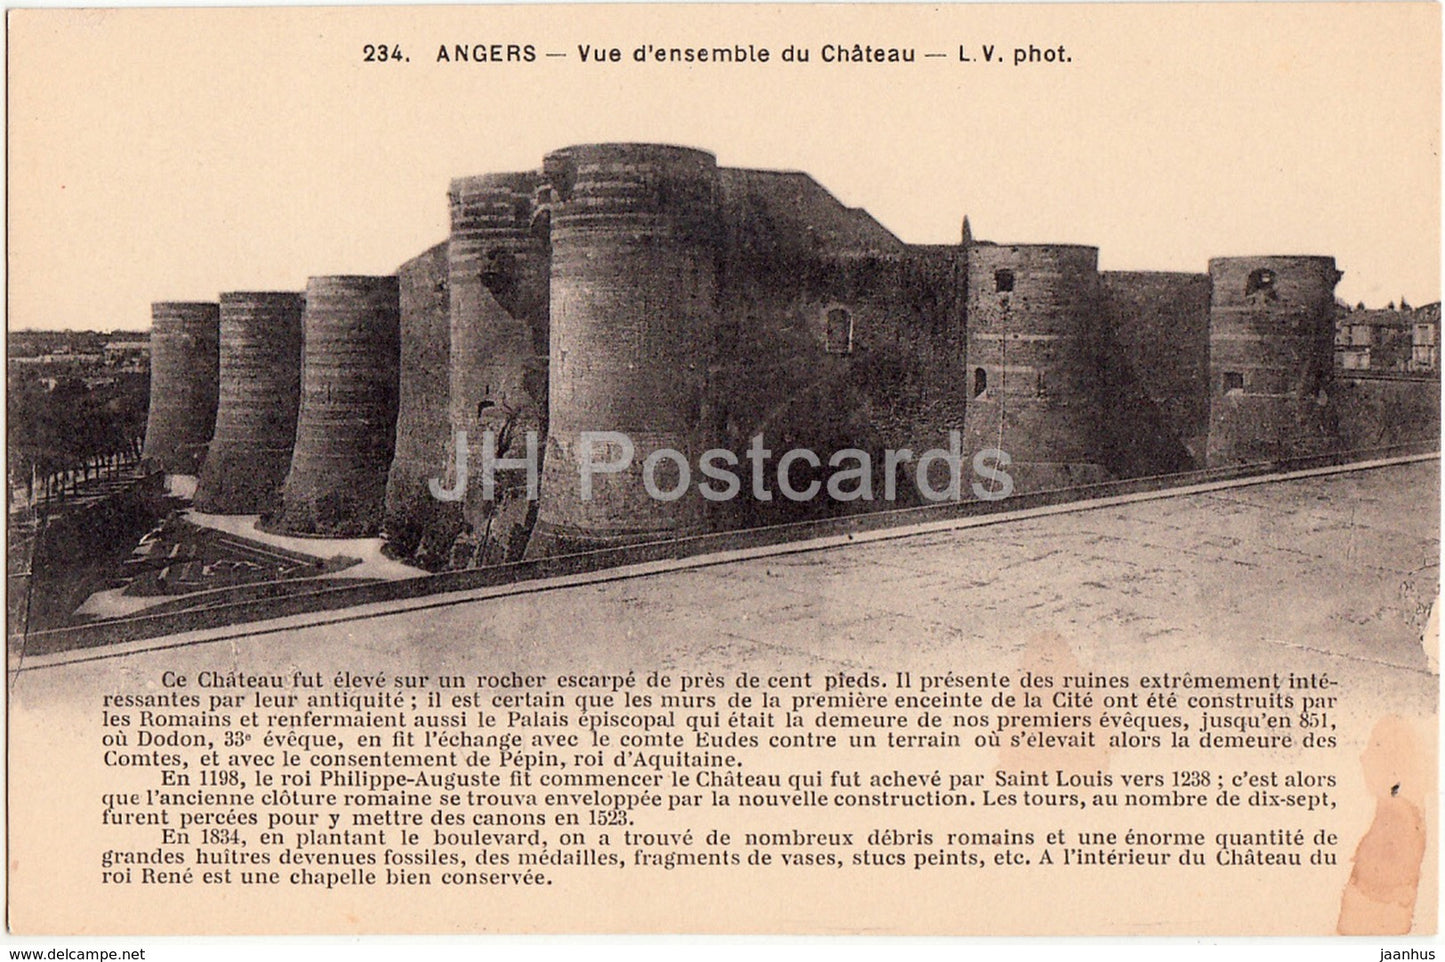 Angers - Vue d'ensemble du Chateau - castle - 234 - old postcard - France - unused - JH Postcards